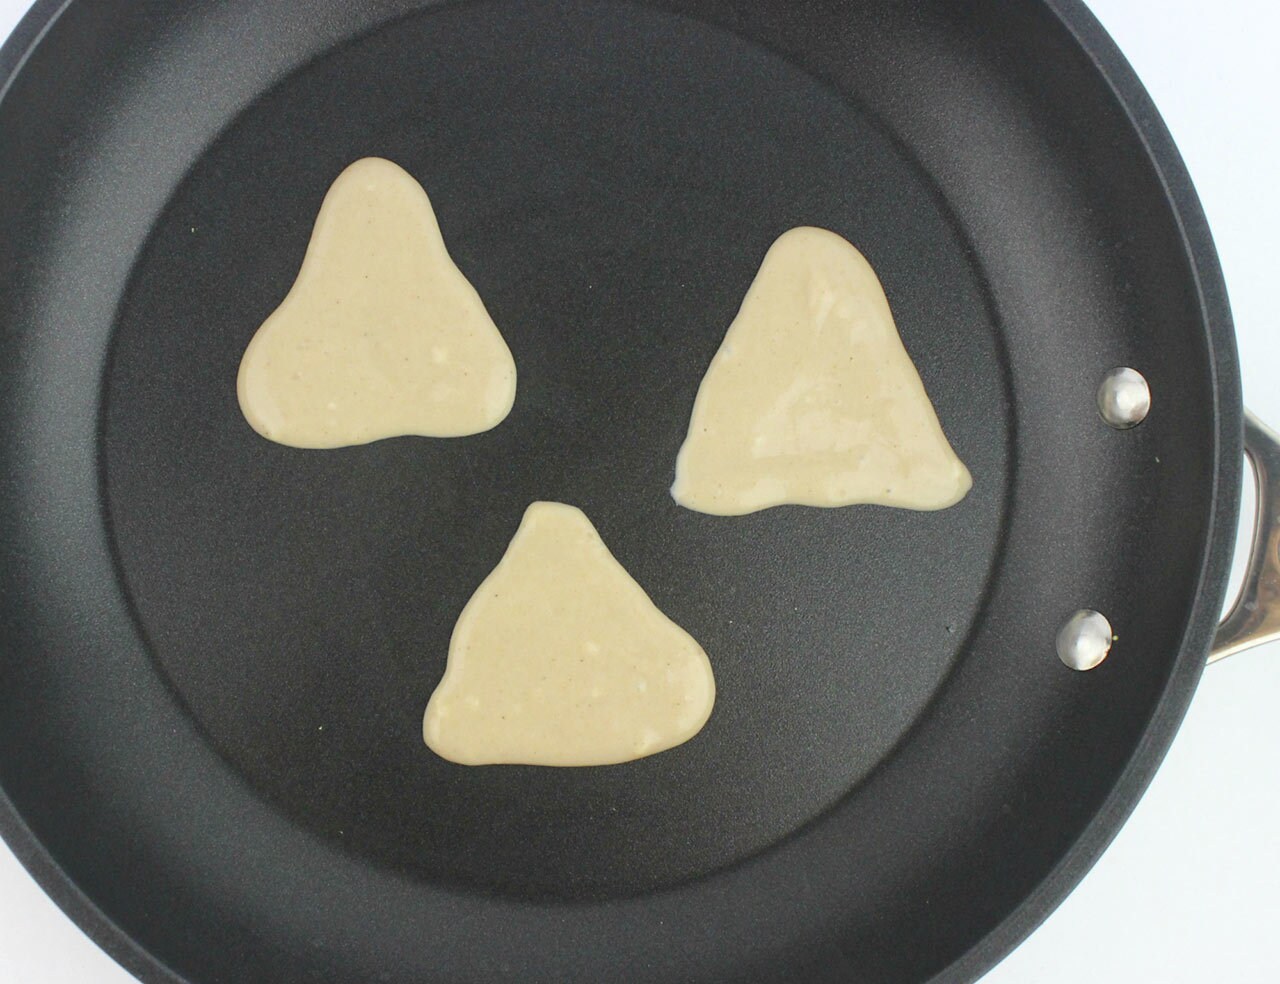 Yoda pancakes: Yoda pancake bodies cooking